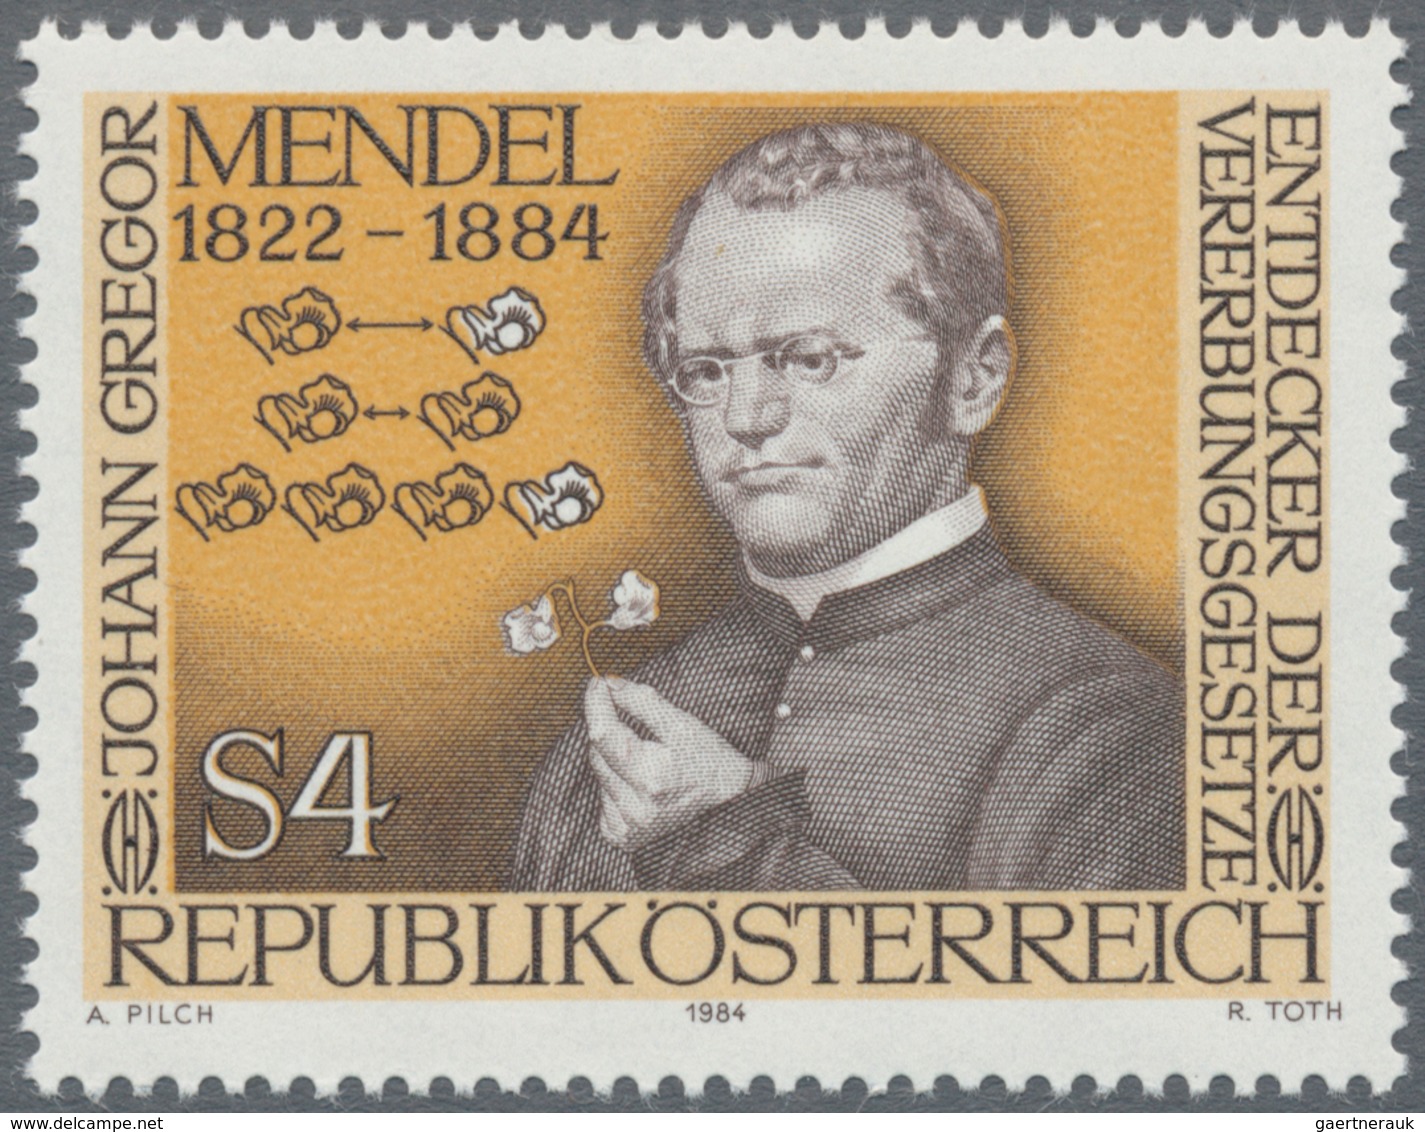 Österreich: 1984, 4 Sch. "Gregor Mendel", drei Phasendrucke in Schwarz (1.-3. Phase), je Einzelabzug